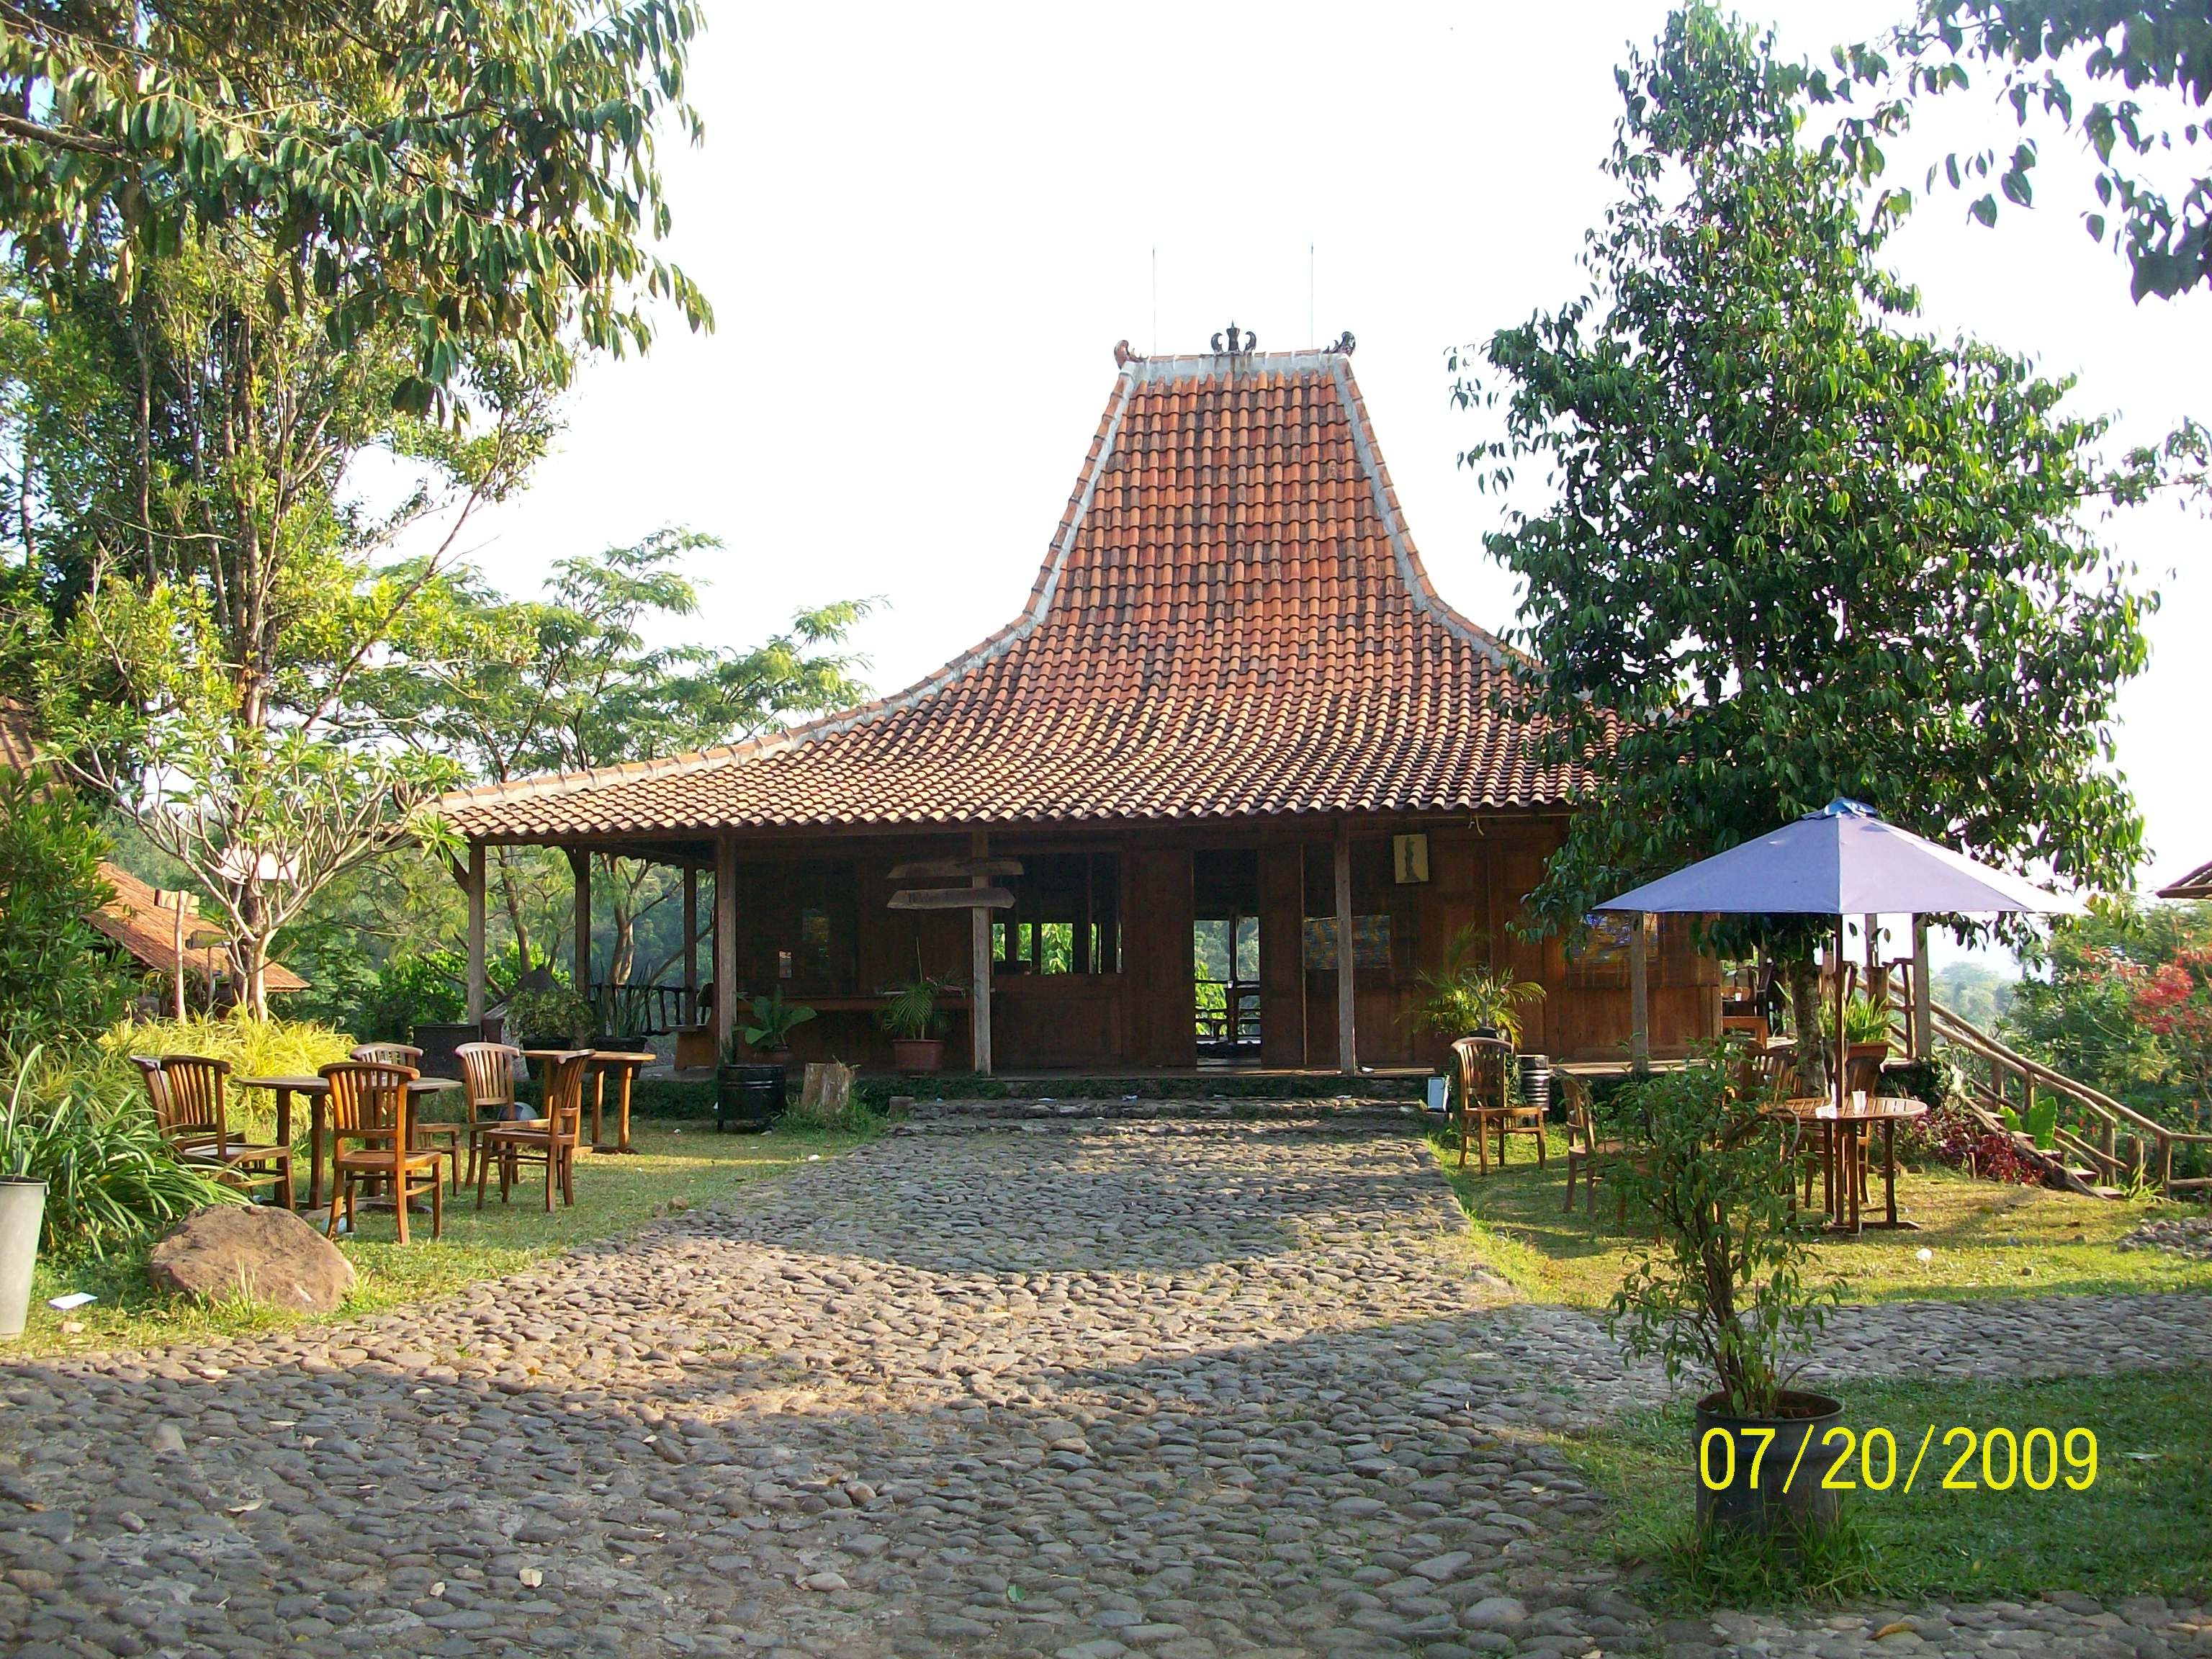 Cemerlang 21 Gambar Rumah Adat Joglo Jawa Tengah 80 Di Desain Dekorasi Mebel Rumah oleh 21 Gambar Rumah Adat Joglo Jawa Tengah